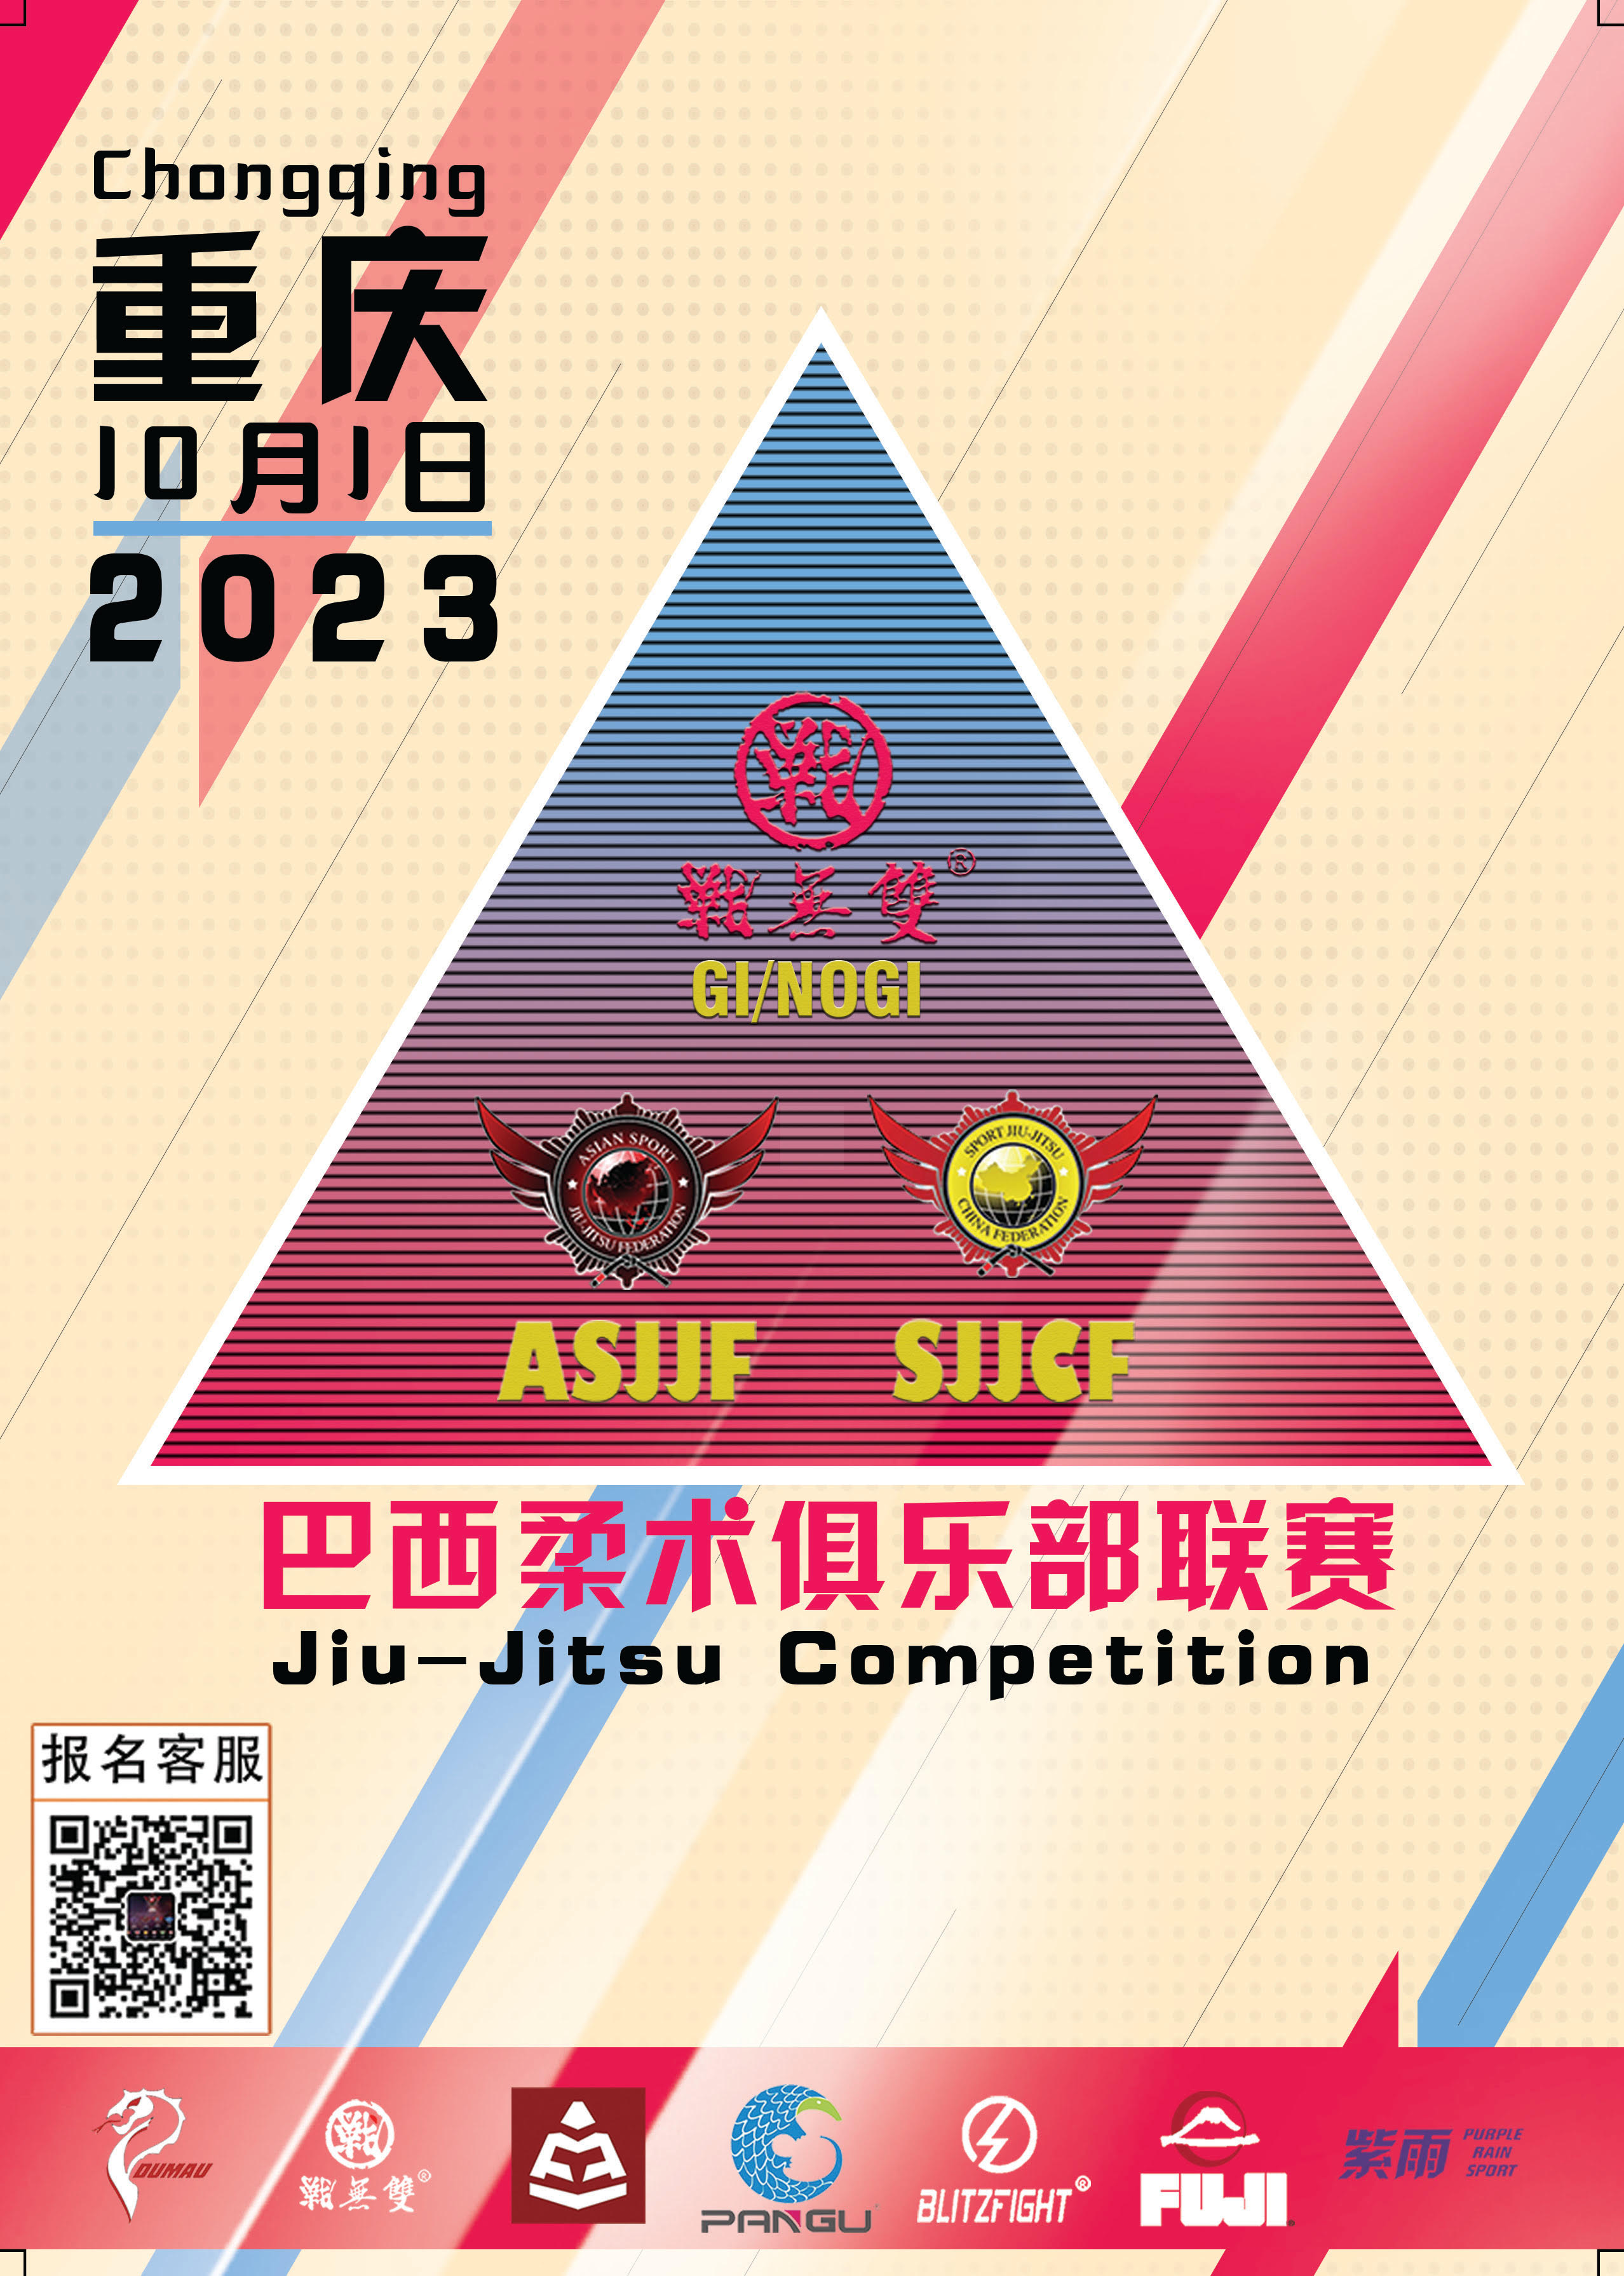 Sjjcf Chongqing Jiu Jitsu Championship 2023